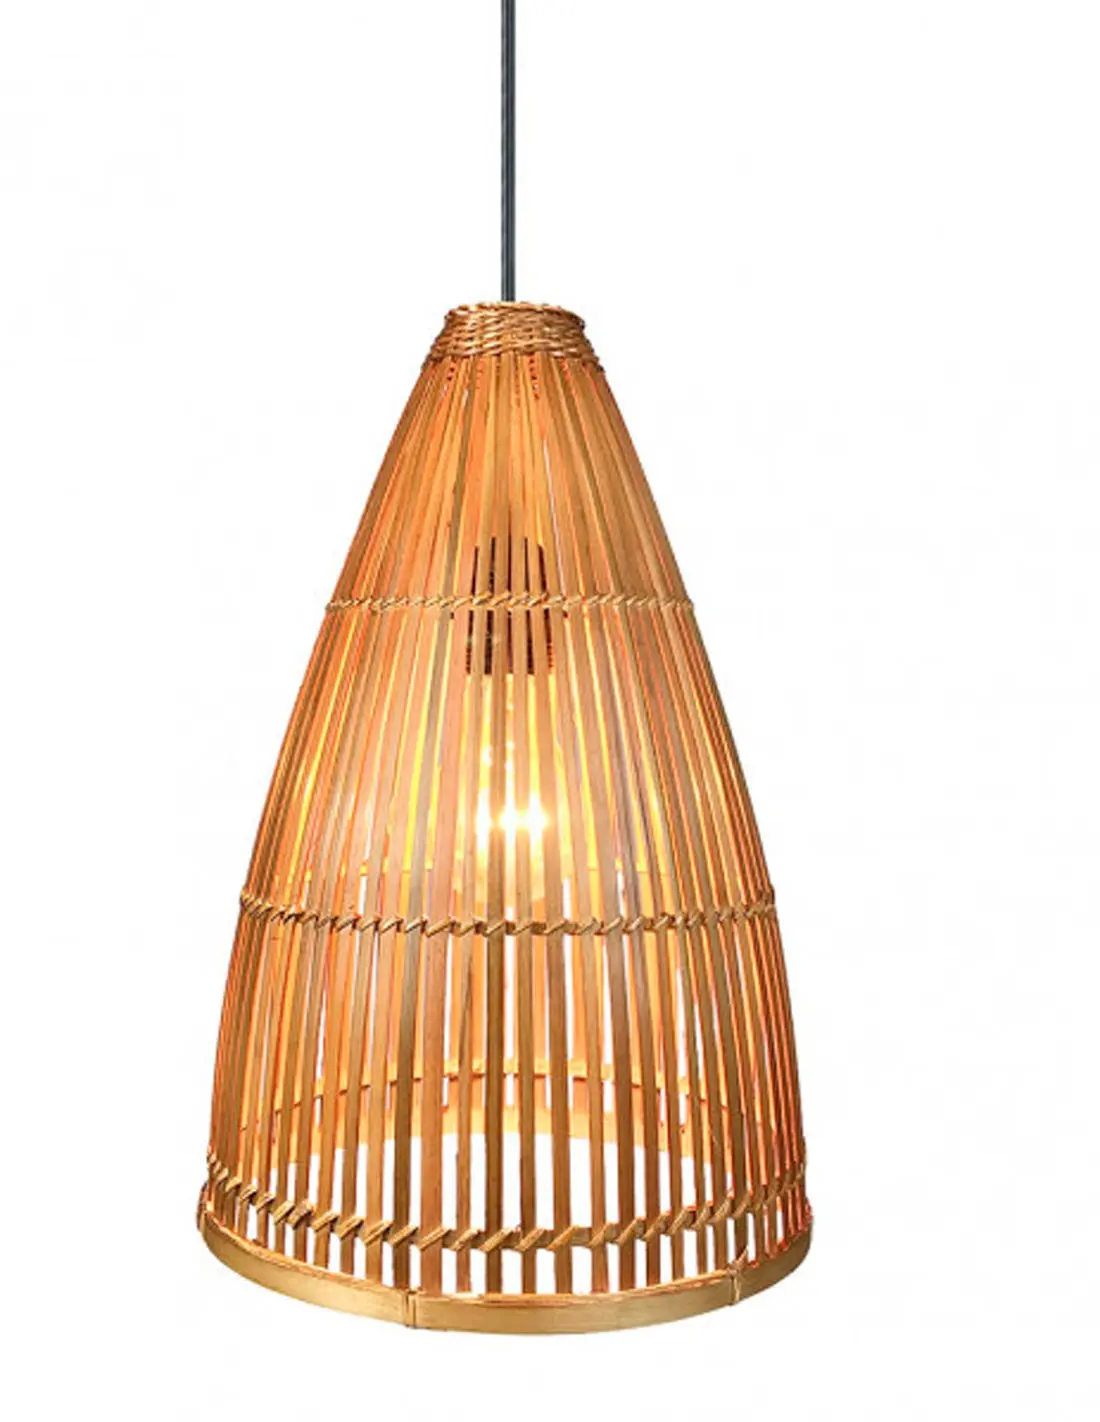 lamparas hechas con bambu - Qué cosas se pueden fabricar con el bambú